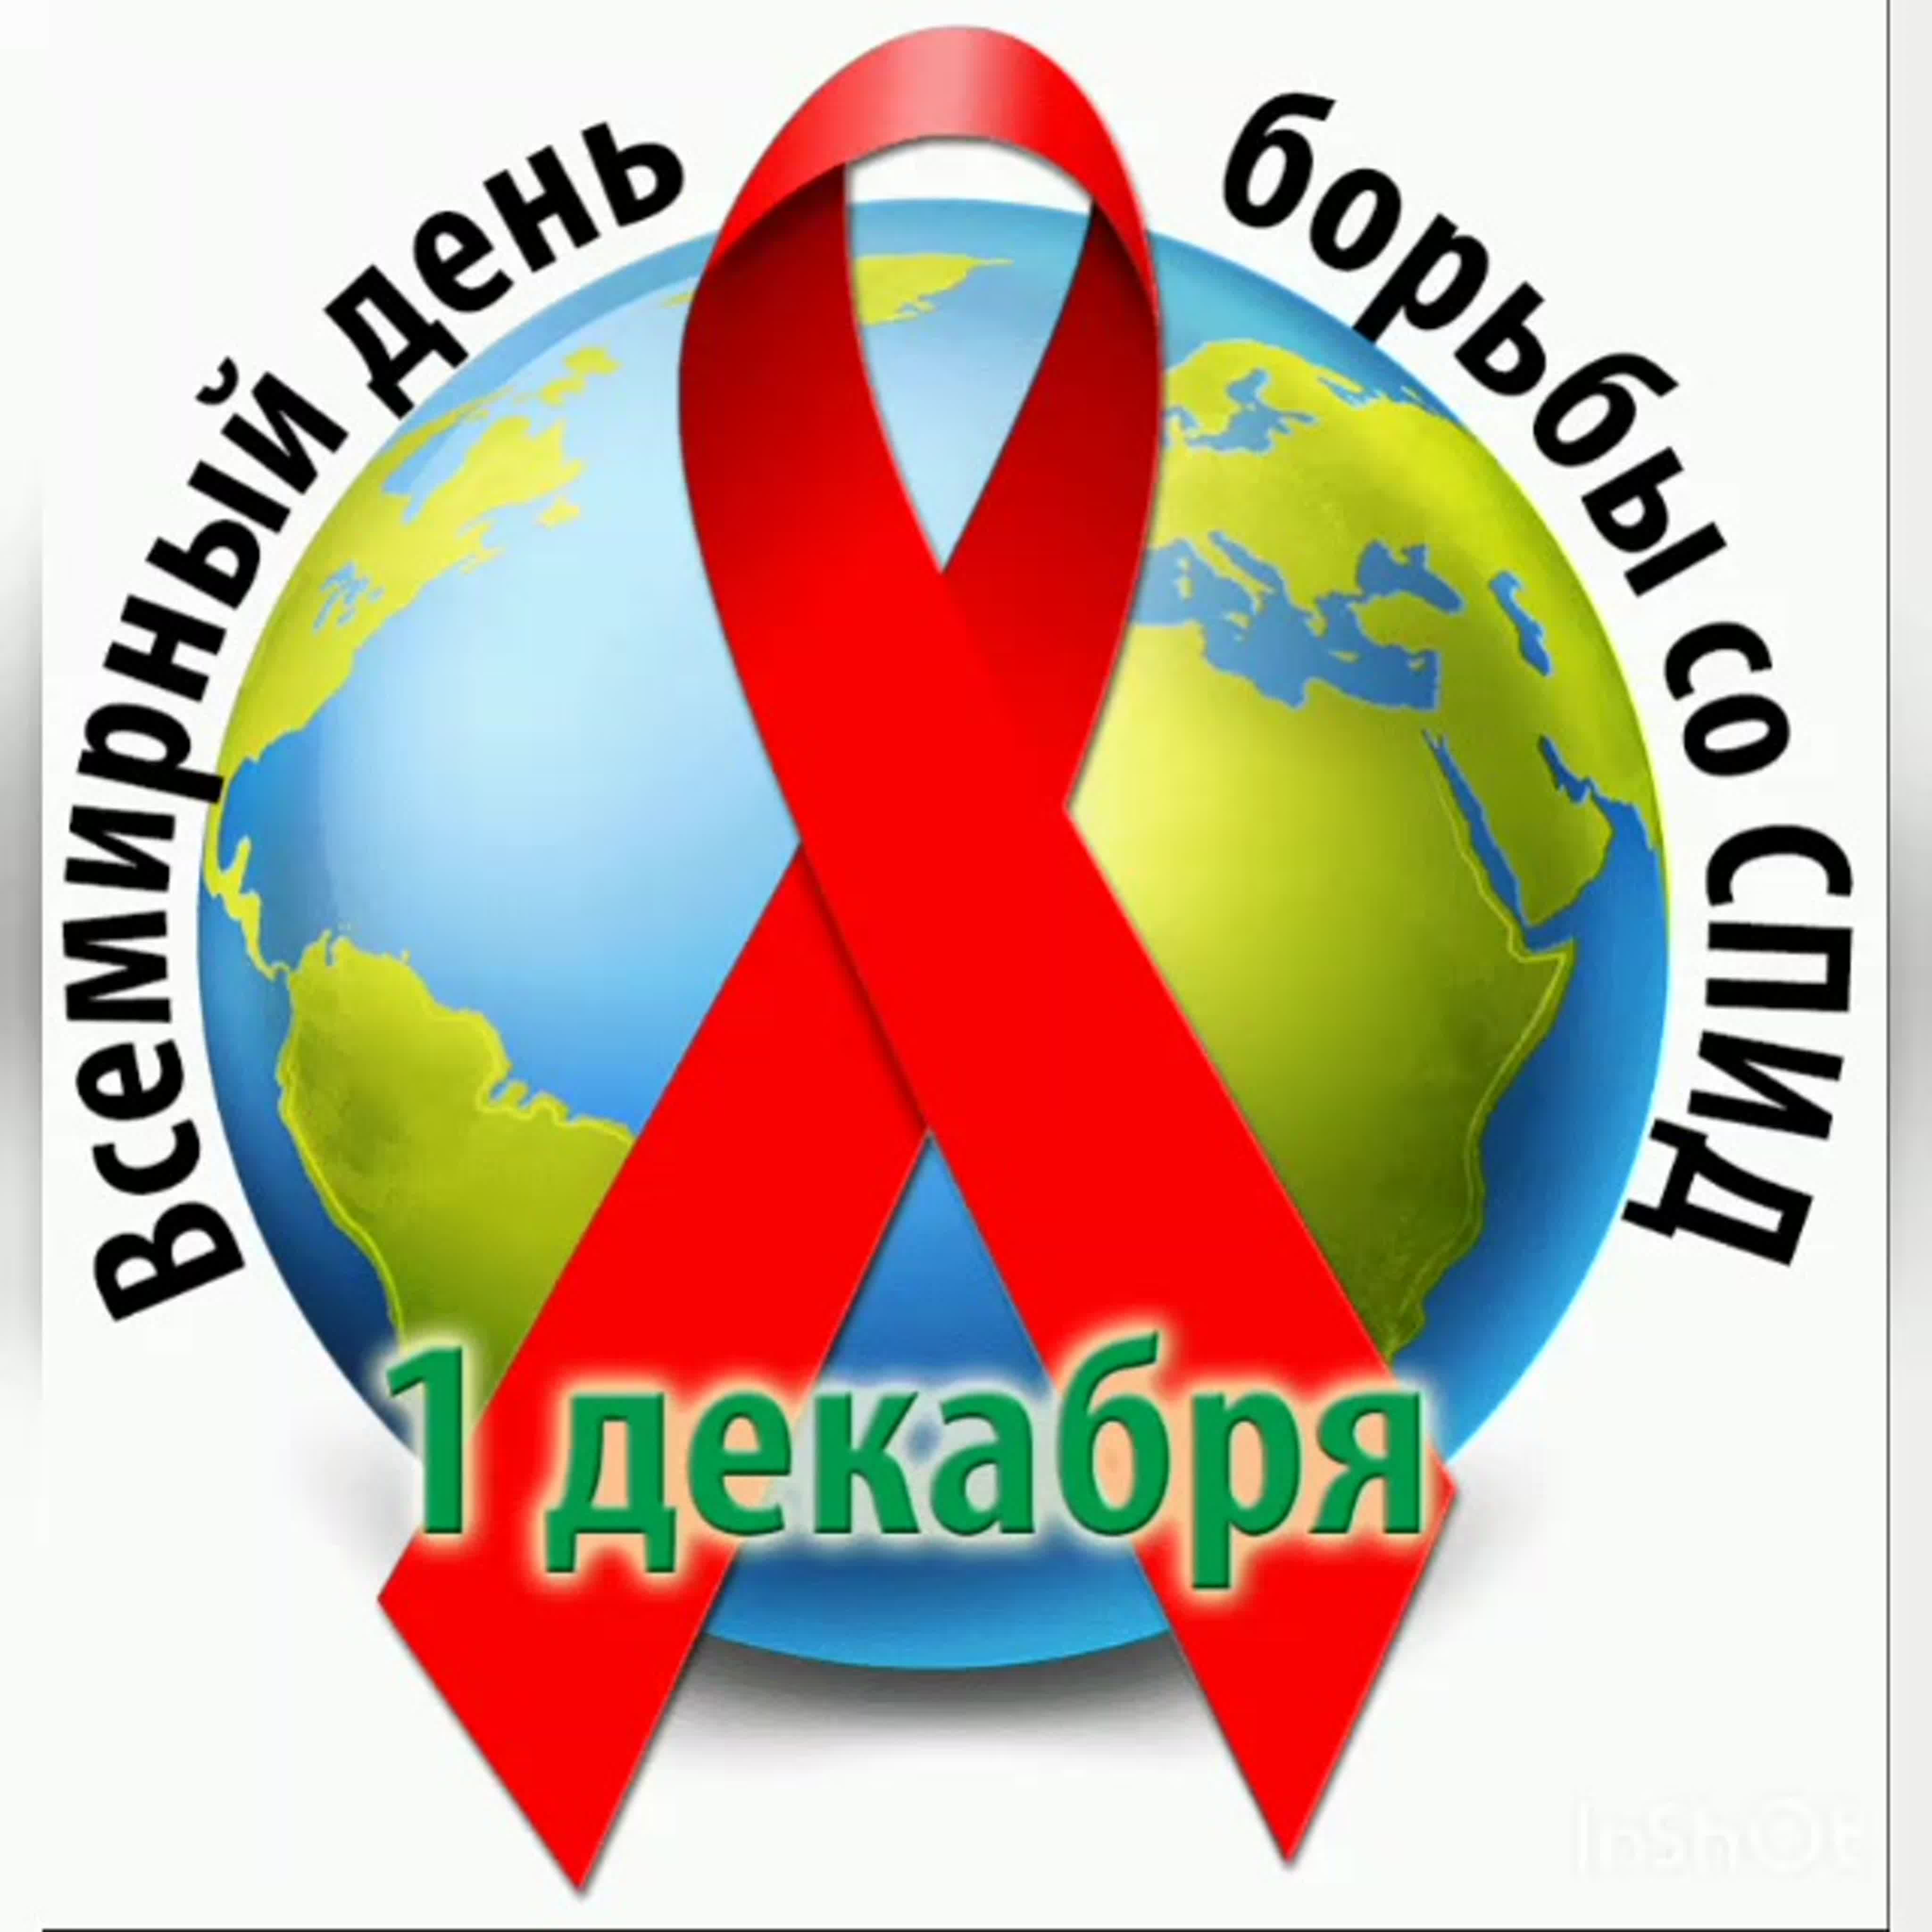 День борьбы со СПИДом.